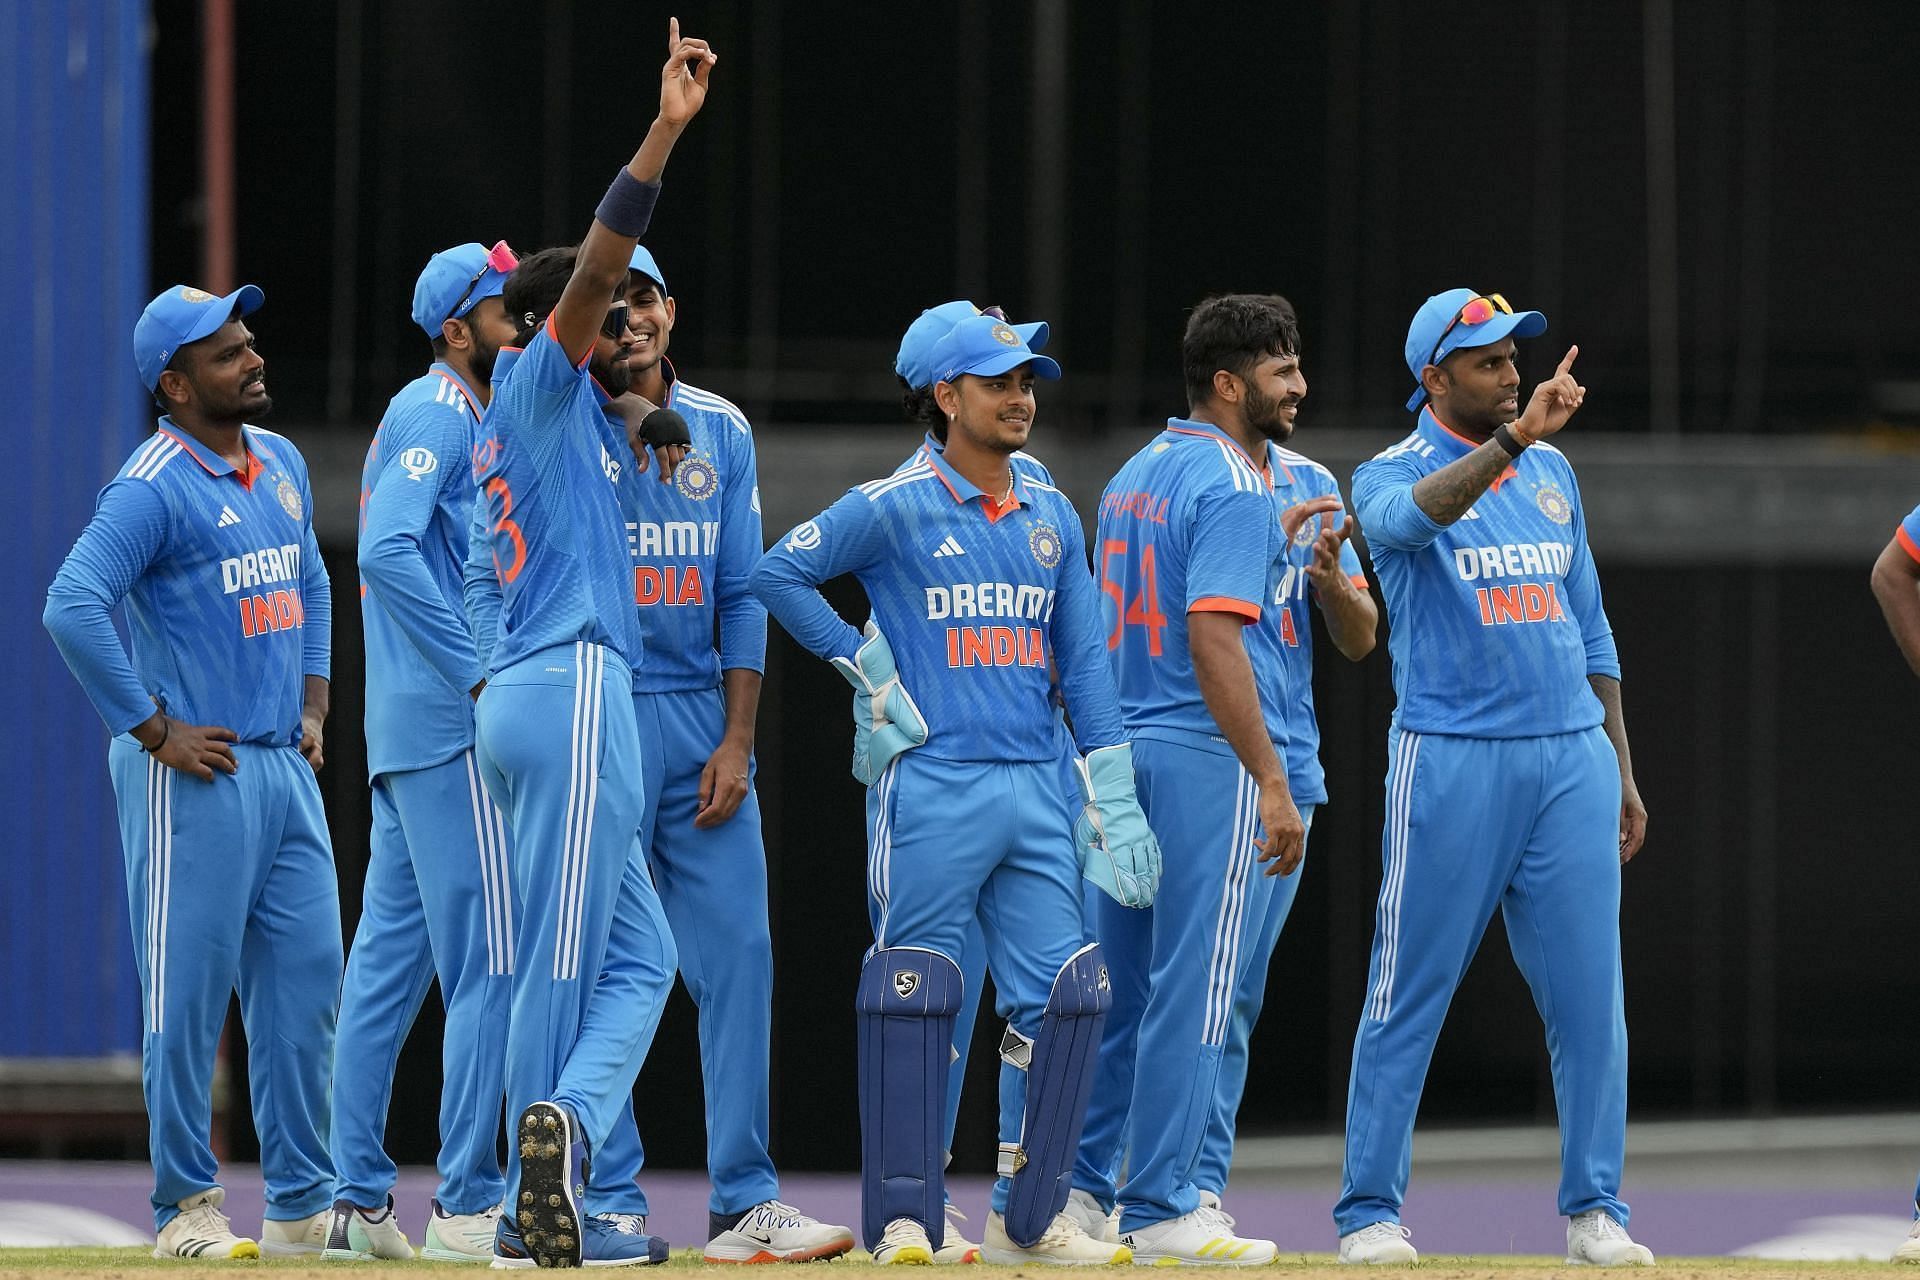 हरभजन सिंह ने कहा कि भारतीय टीम को आक्रामक अंदाज में खेलने की जरुरत है (Photo Courtesy - AP)